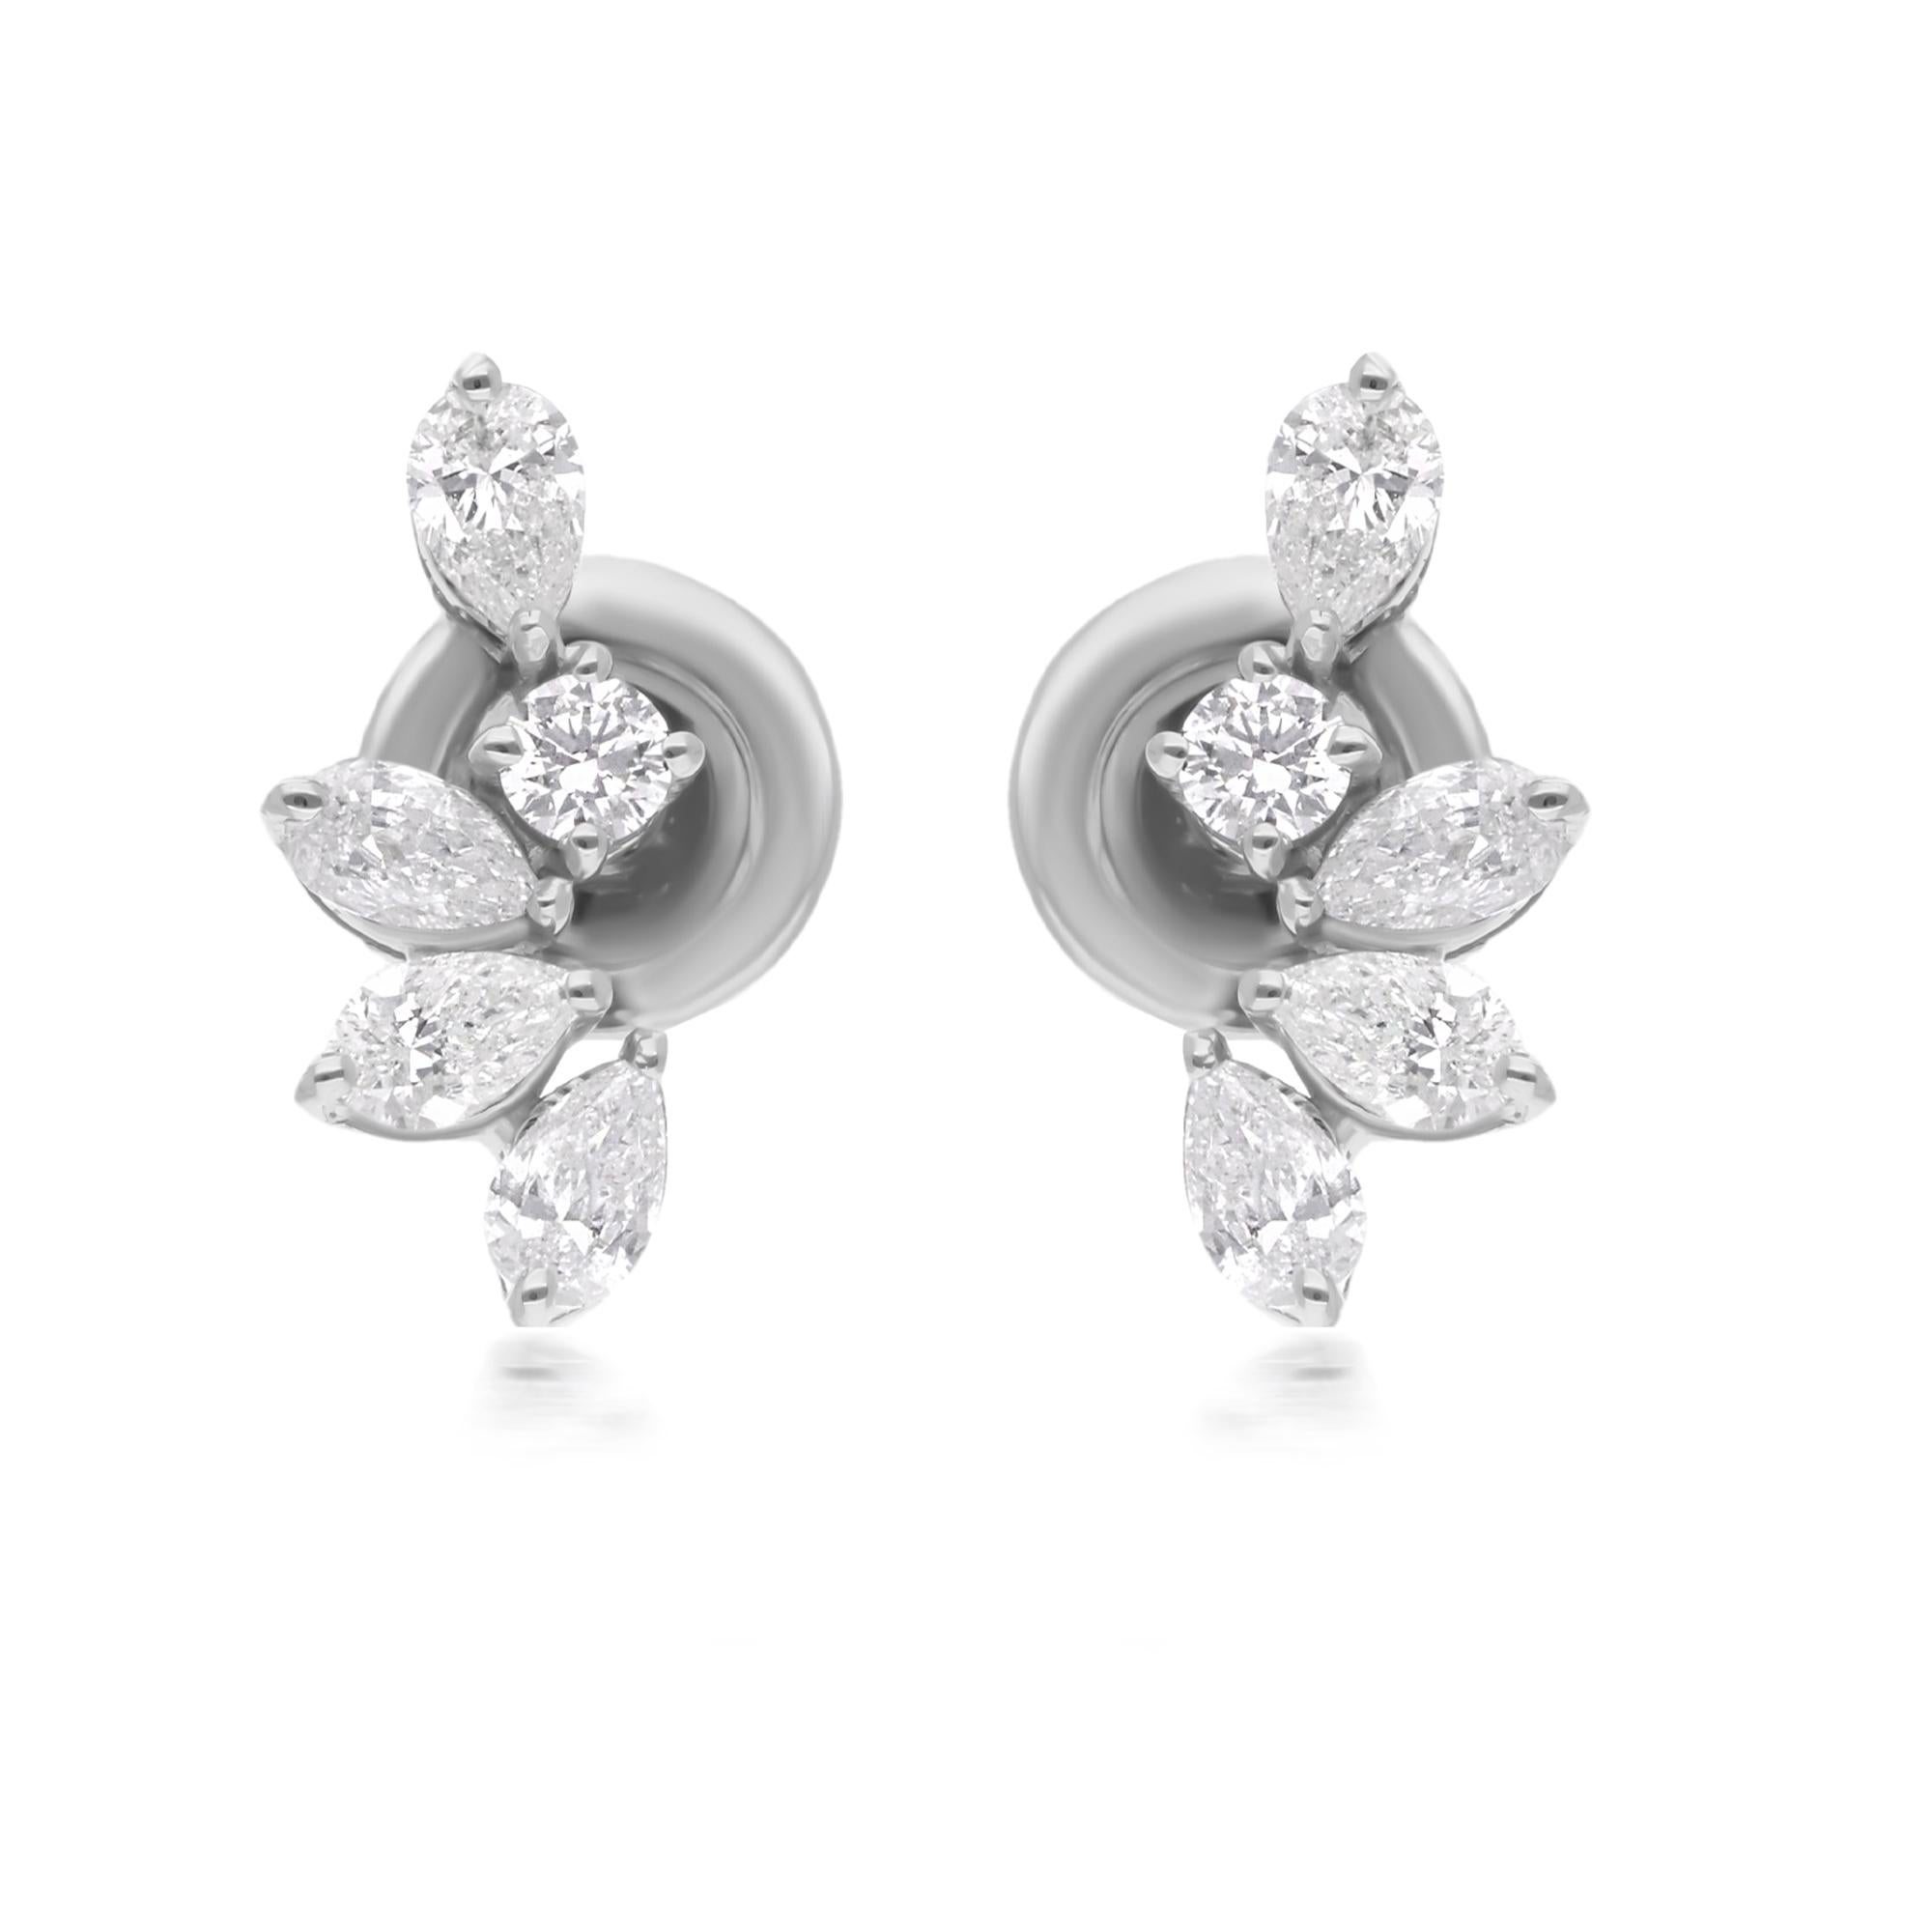 Jeder Ohrring ist mit einem atemberaubenden Diamanten im Birnenschliff besetzt, der sorgfältig wegen seiner außergewöhnlichen Qualität und Brillanz ausgewählt wurde. Die Diamanten sind in glänzende 14-karätige Weißgoldfassungen gefasst, die ihre